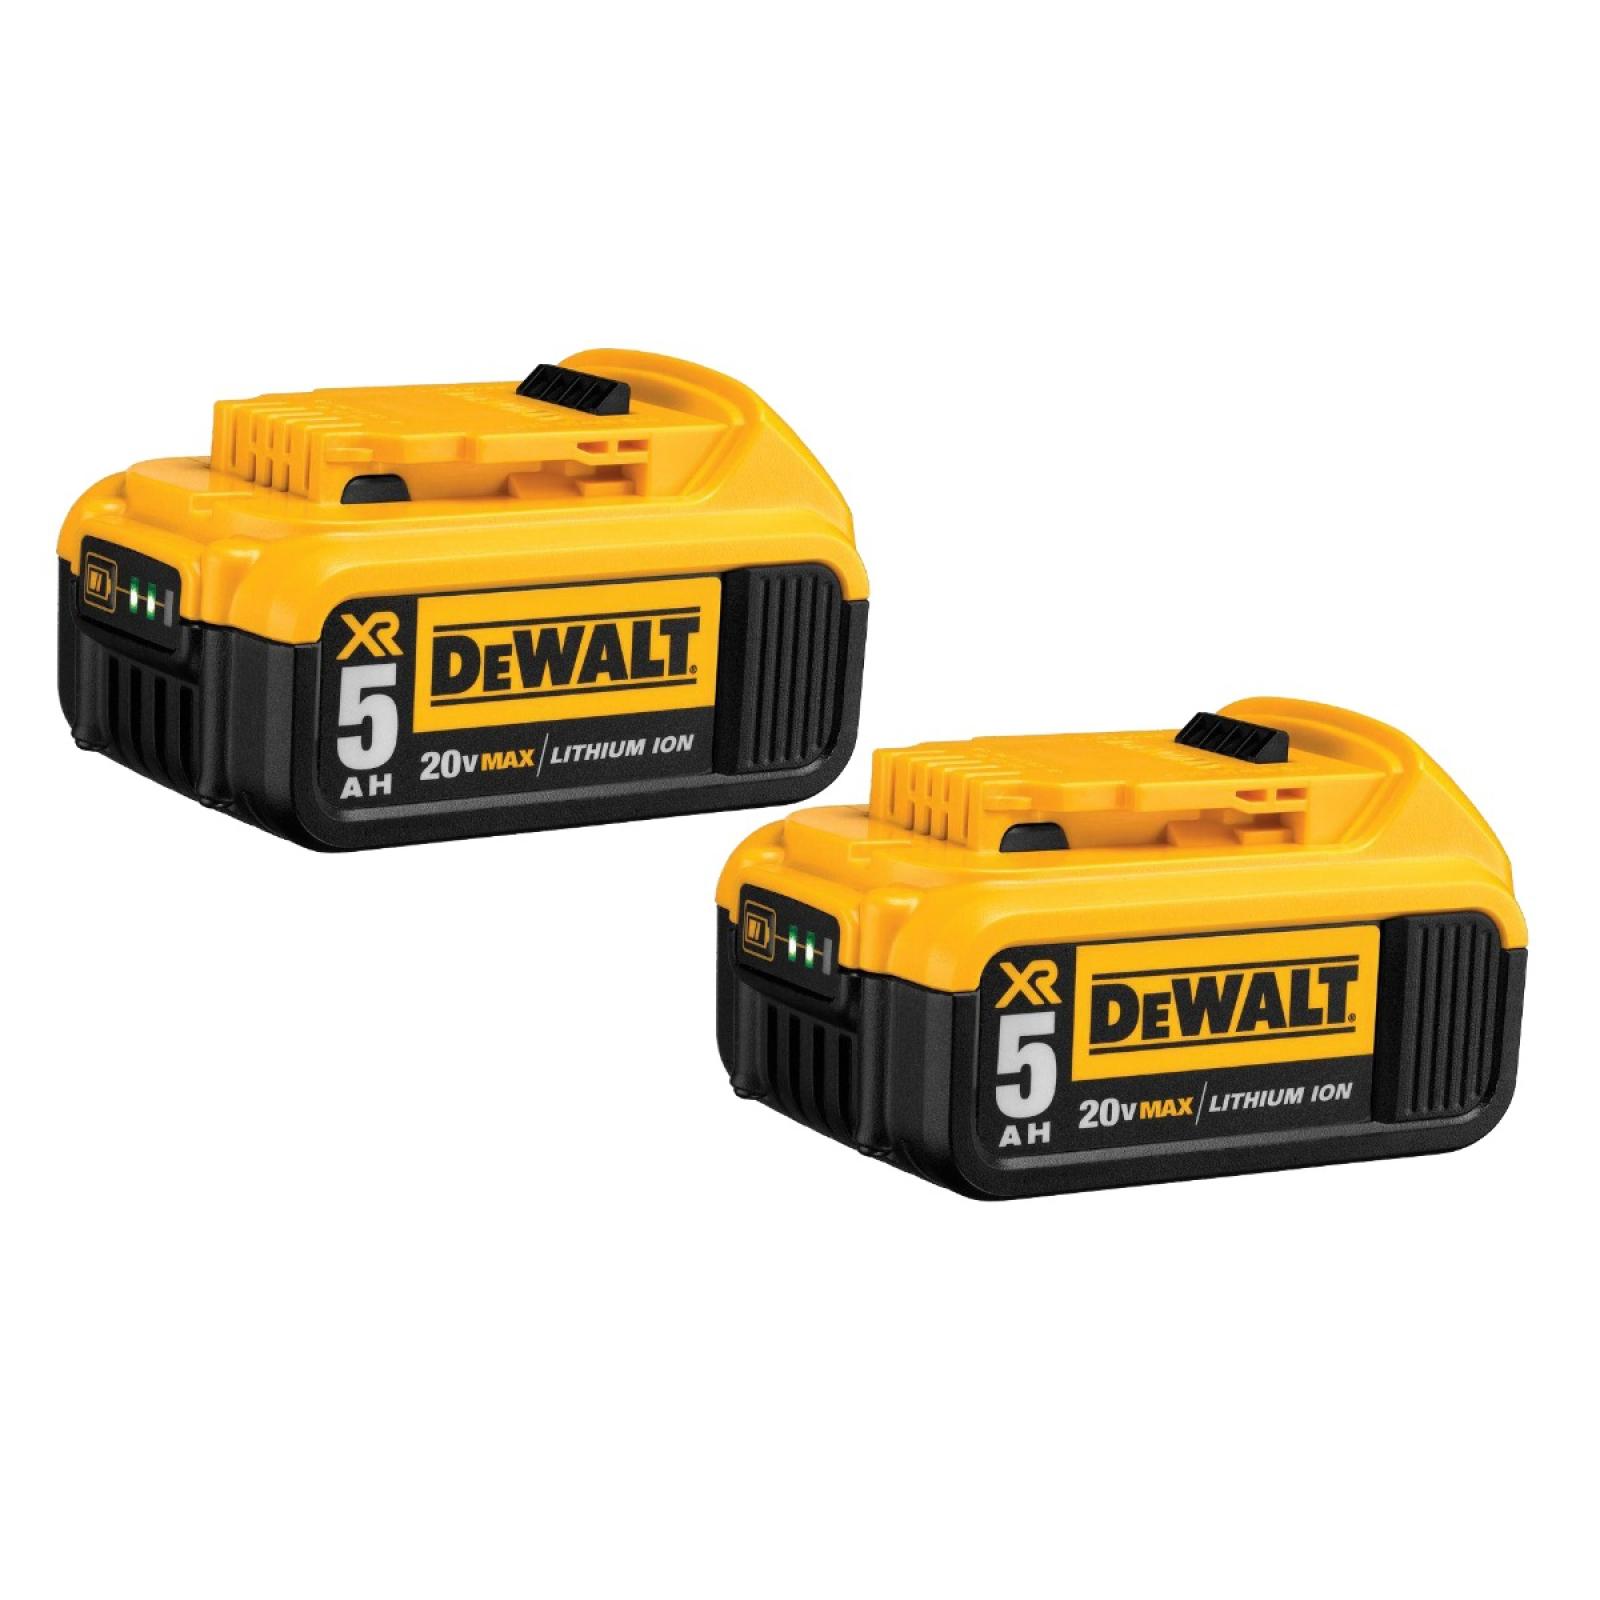 DeWalt 20V Max* Battery XR 5AH Lithium Ion 2 Pack